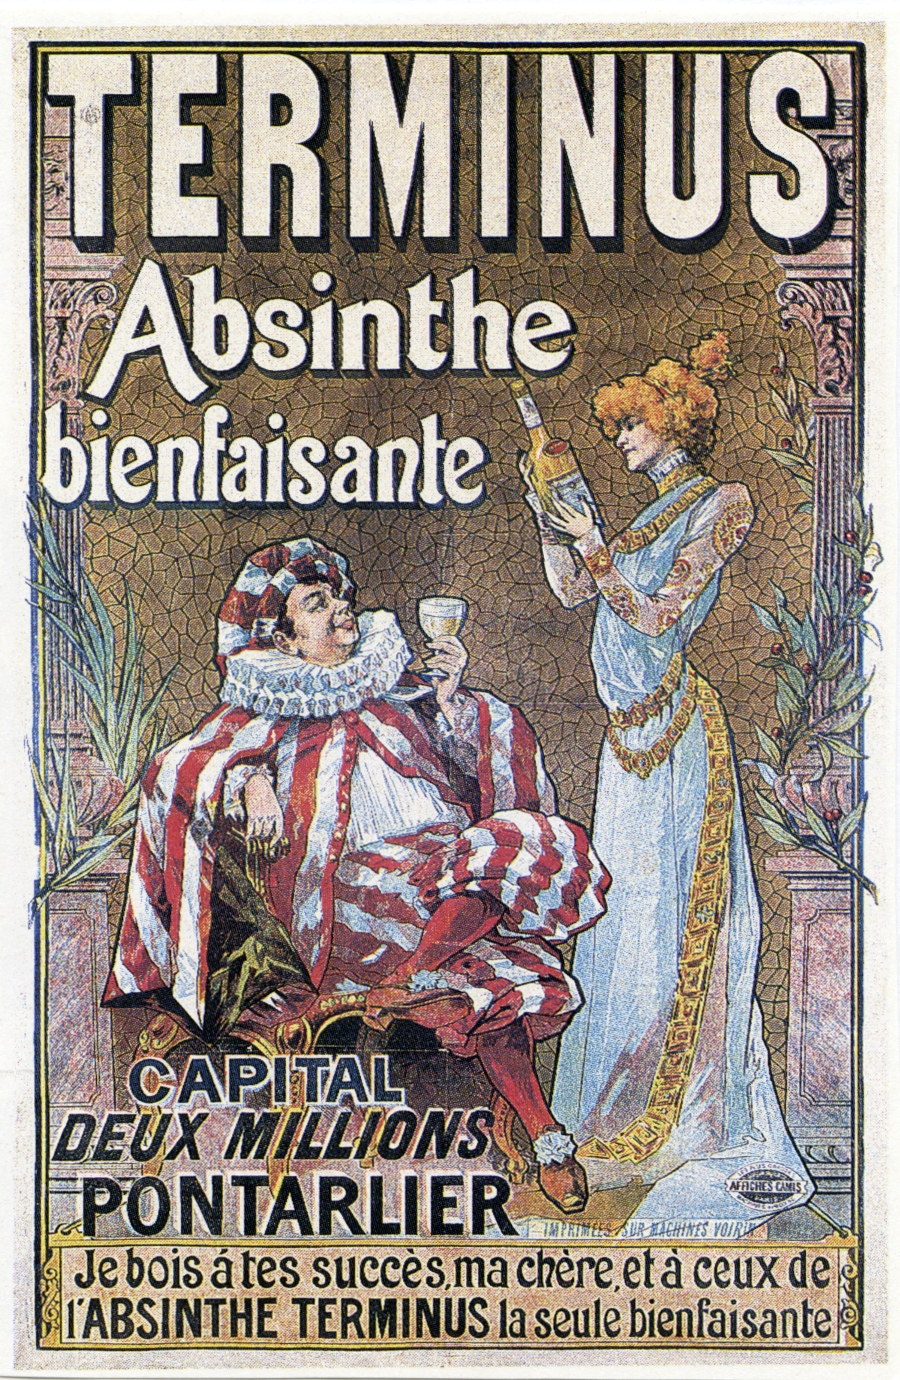 Historisches Werbeplakat mit Aufschrift "Terminus Absinth bienfaisante". Links sitzt ein Mann mit ausladendem rot-weiß-gestreiftem Gewand und Mütze und weißer Halskrause, der ein gefülltes Glas in der Hand hält. Rechts steht eine rothaarige Frau in einem hellblauen Kleid, die eine Flasche in der Hand hält und sie betrachtet. 